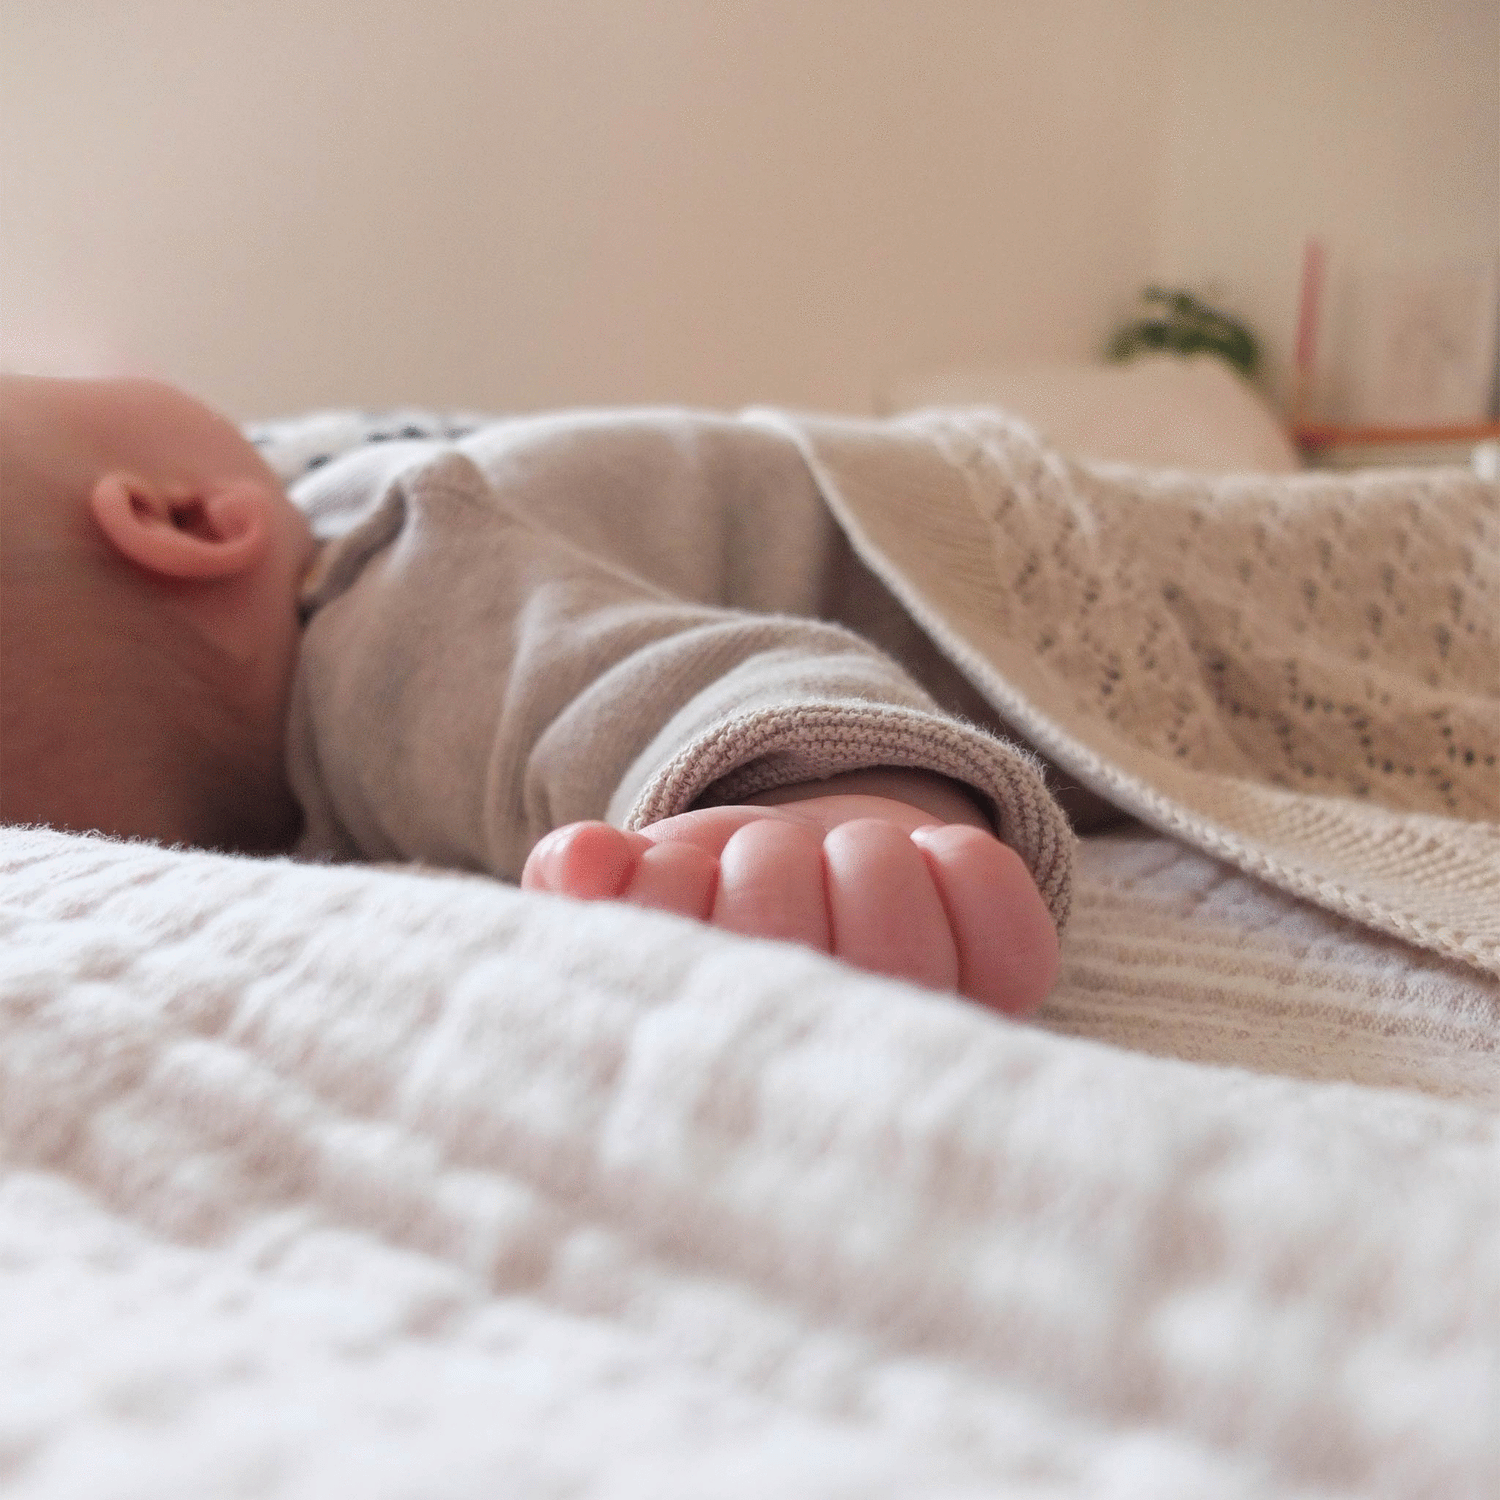 kotenkram onlineshop für handgefertigte babyartikel kategorie neuheiten neuvorstellungen neu bei kotenkram